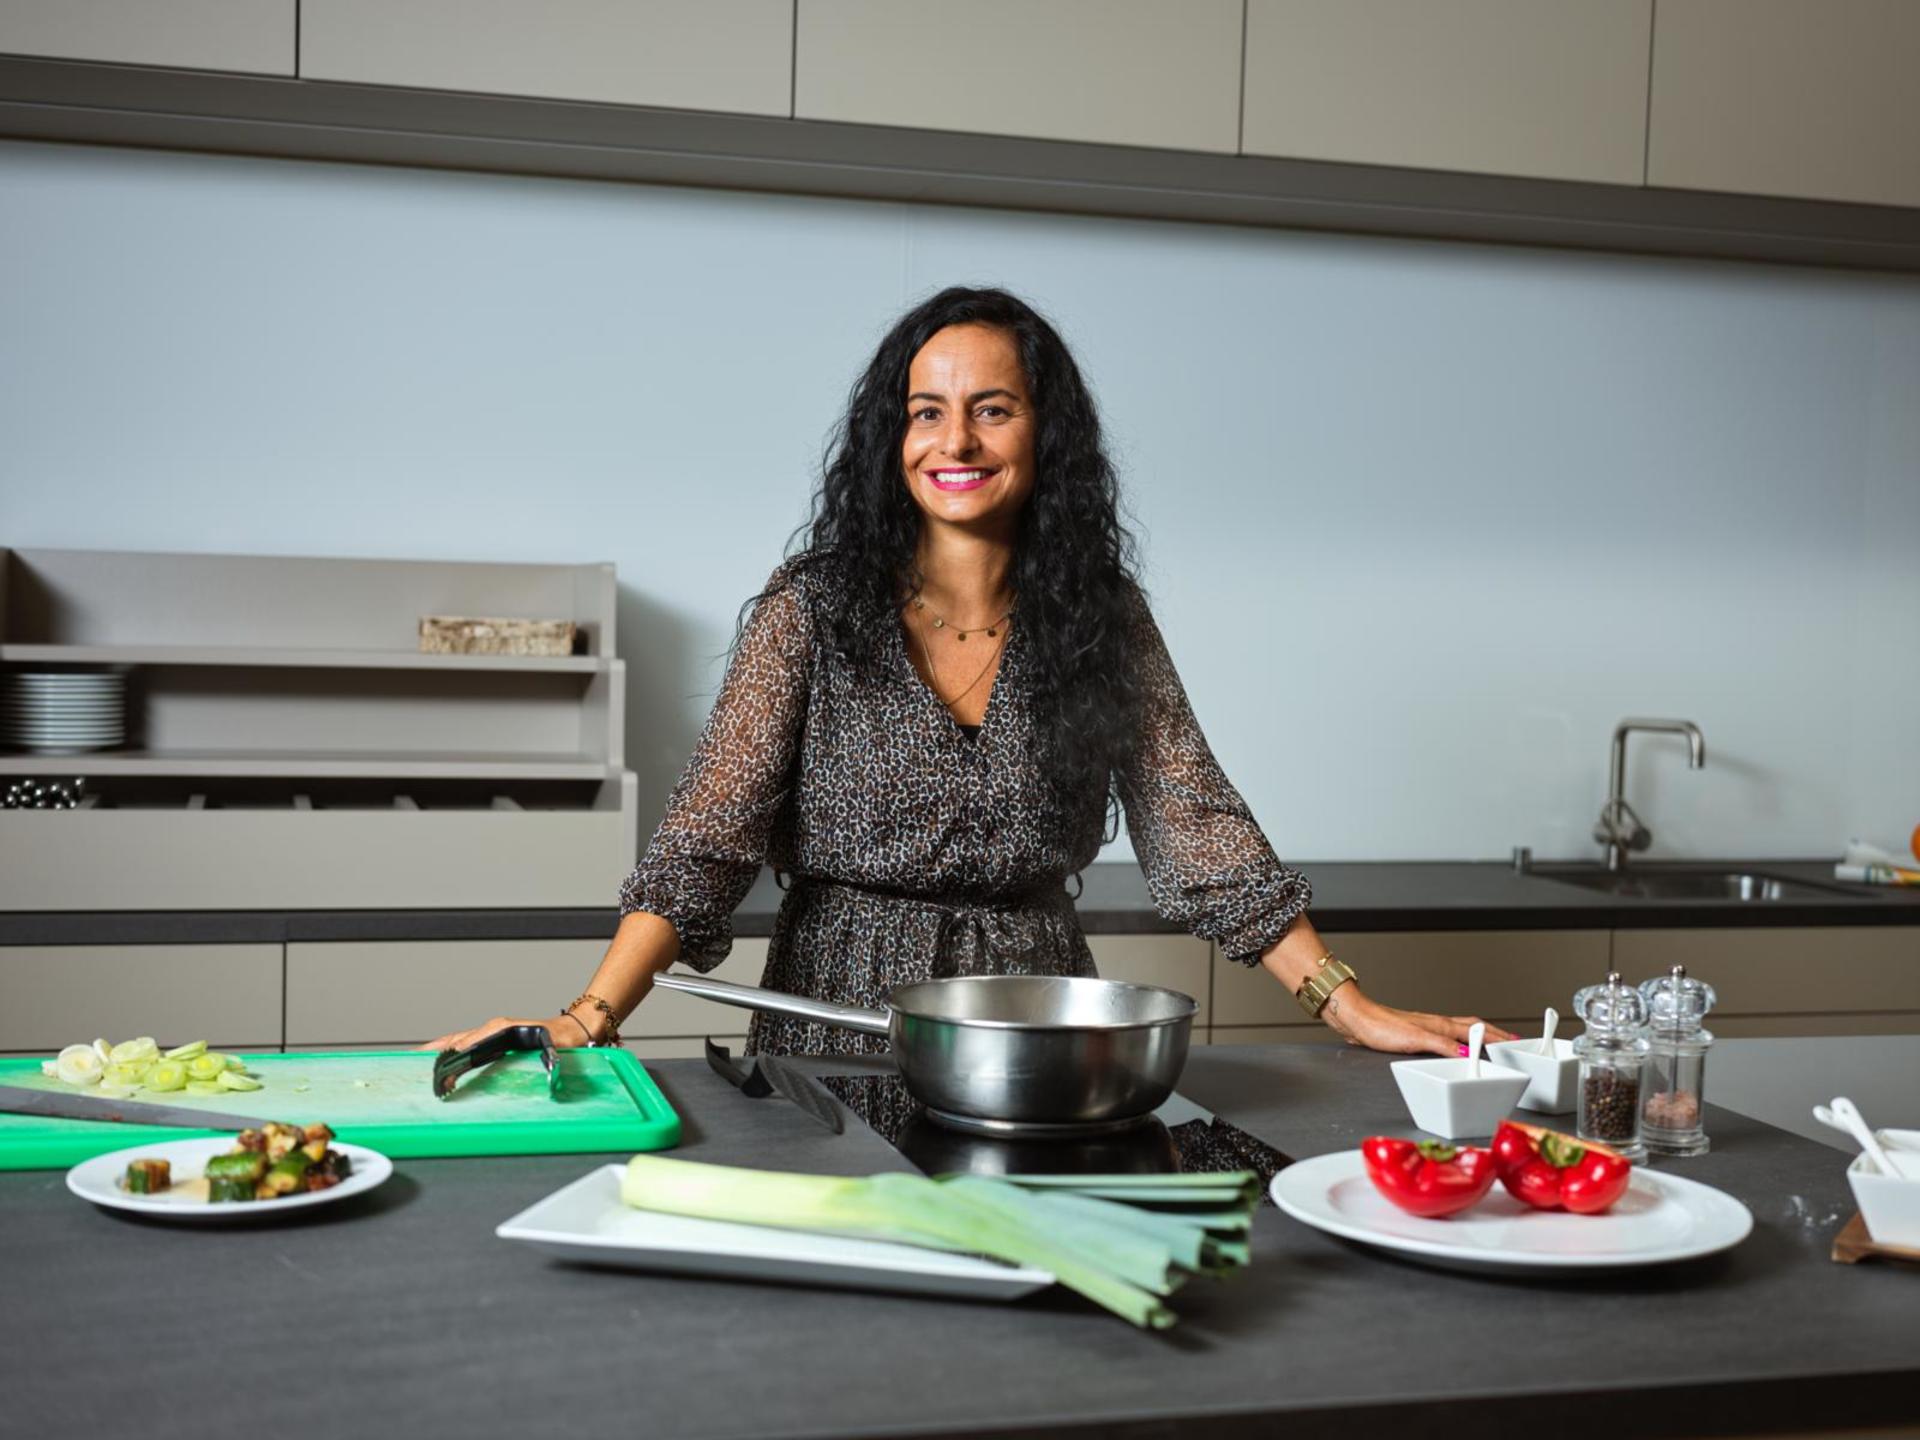 Nancy Da Silva dans une cuisine, devant une poêle et des légumes.